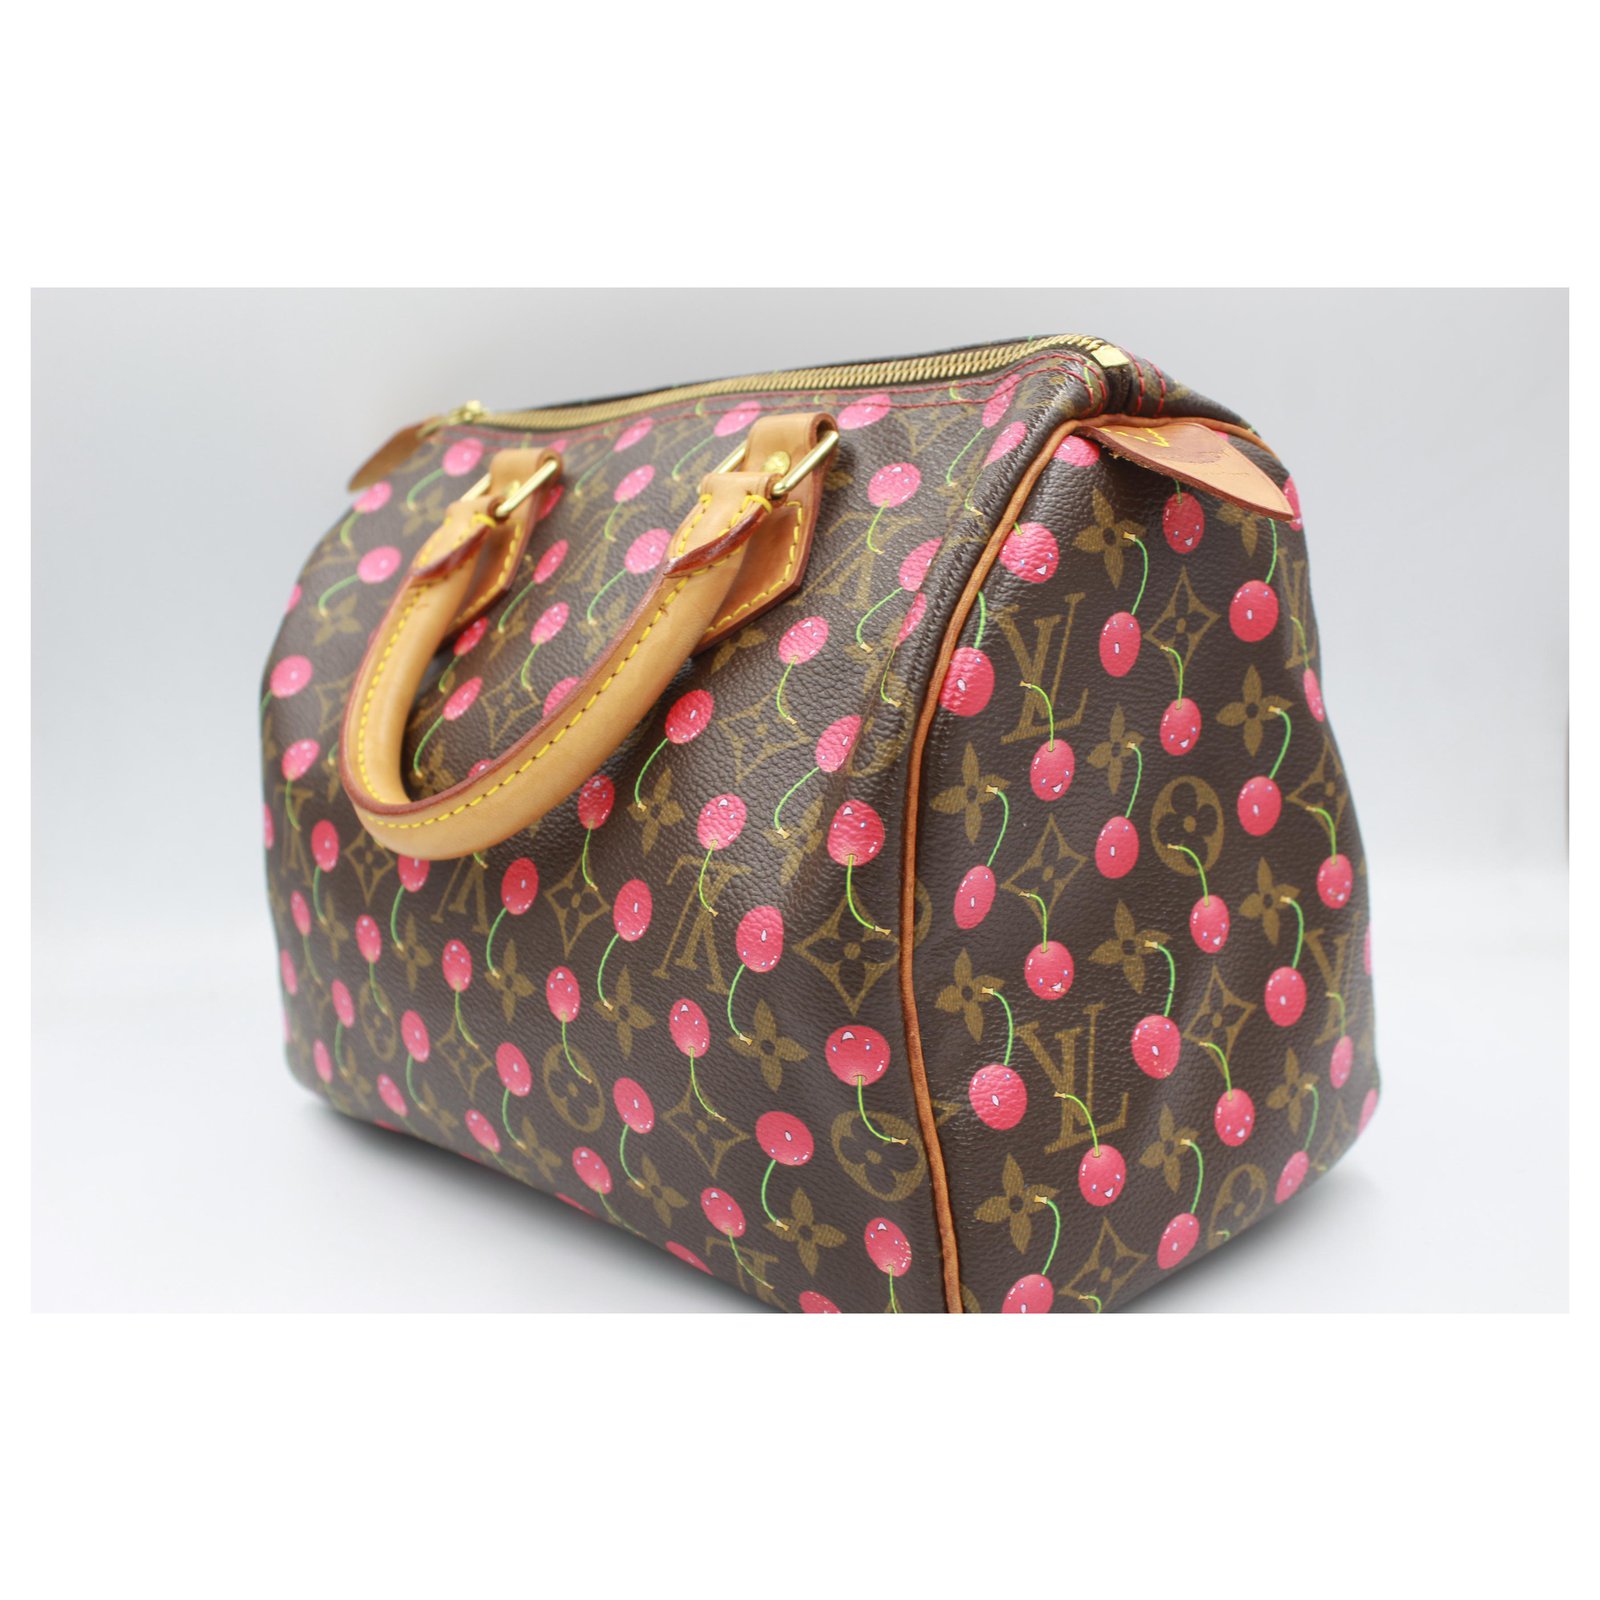 Louis Vuitton Speedy 25 handbag with cherries, by haruki Murakami